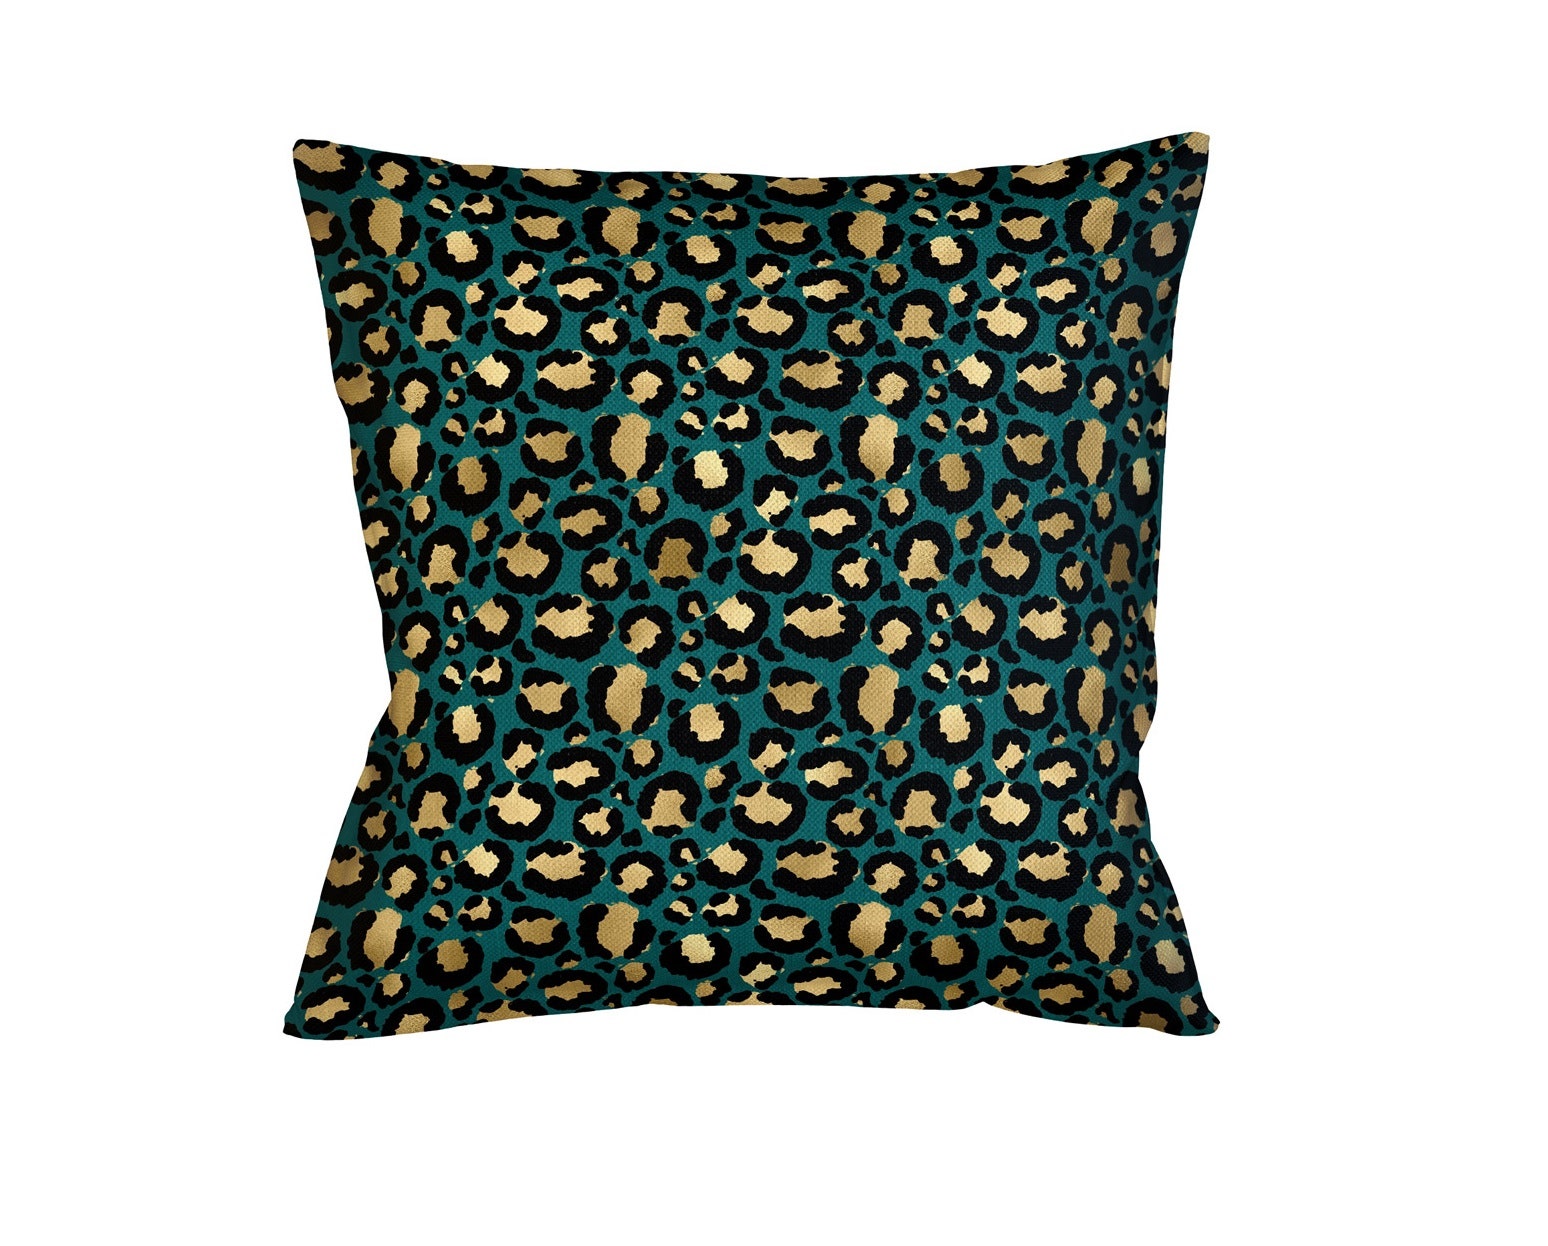 Декоративная подушка “Леопард” Object Desire 2090 руб.